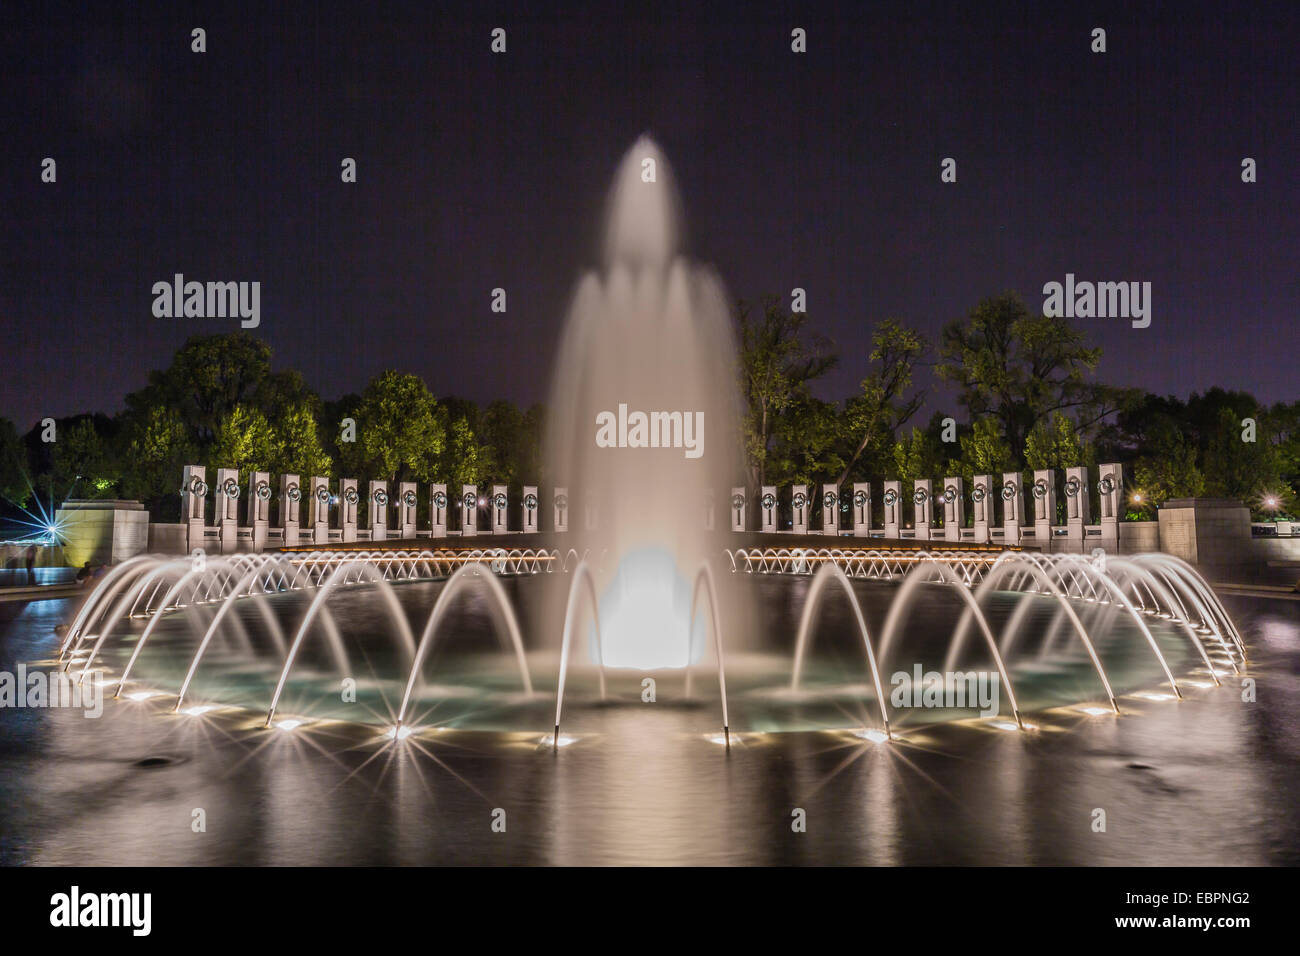 Die Brunnen und Skulptur von der World War II Memorial beleuchtet in der Nacht, Washington D.C., Vereinigte Staaten von Amerika Stockfoto